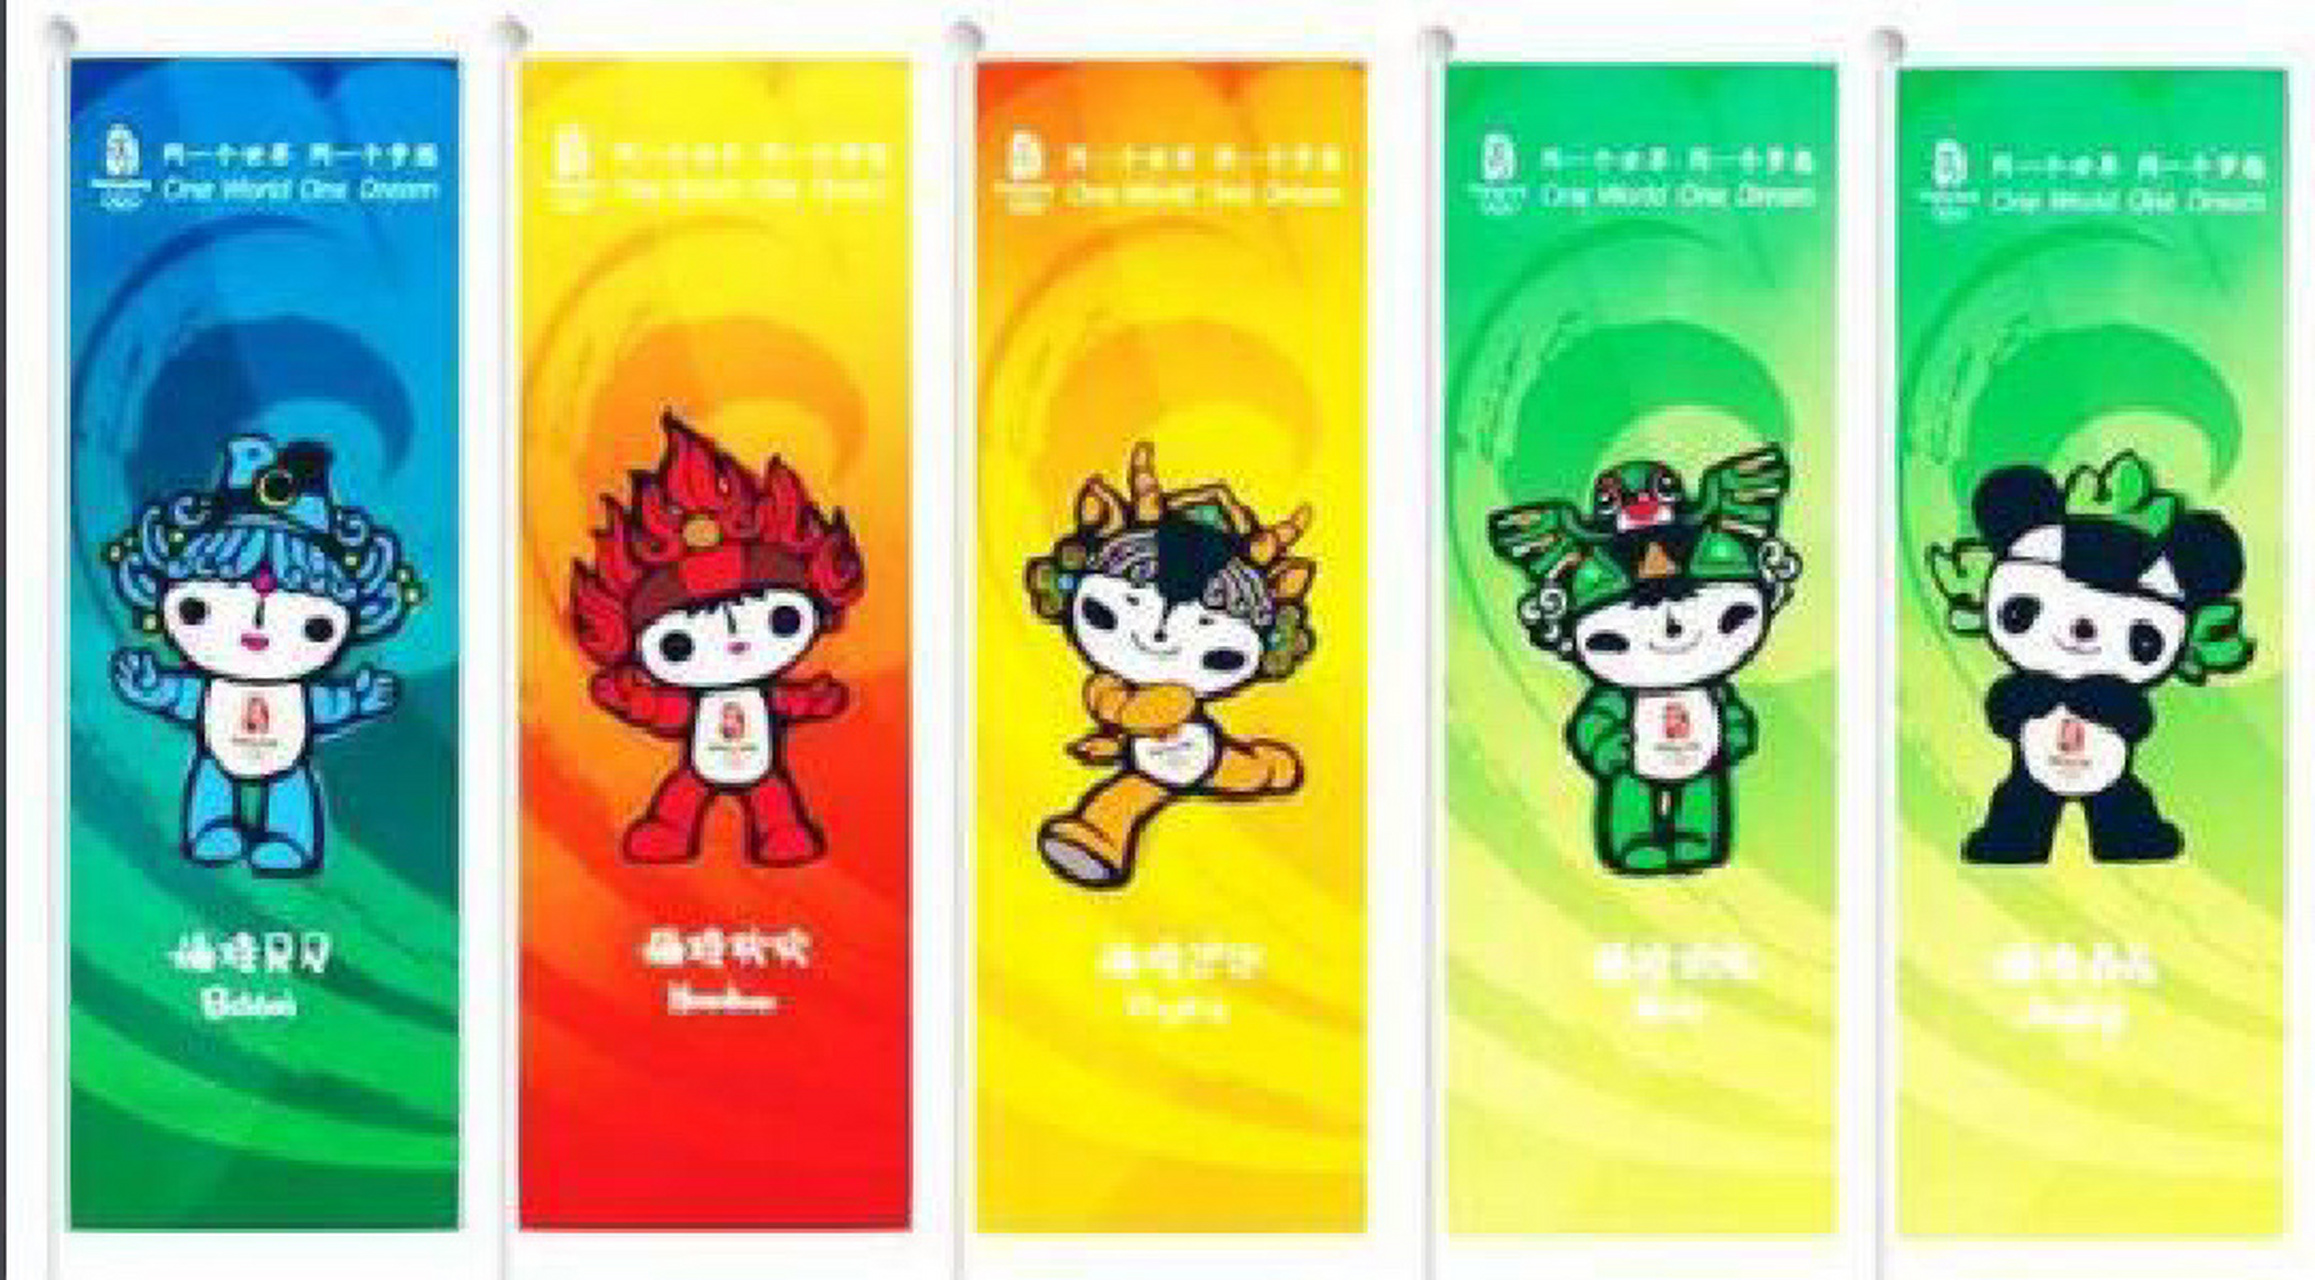 08年北京奥运会吉祥物图片